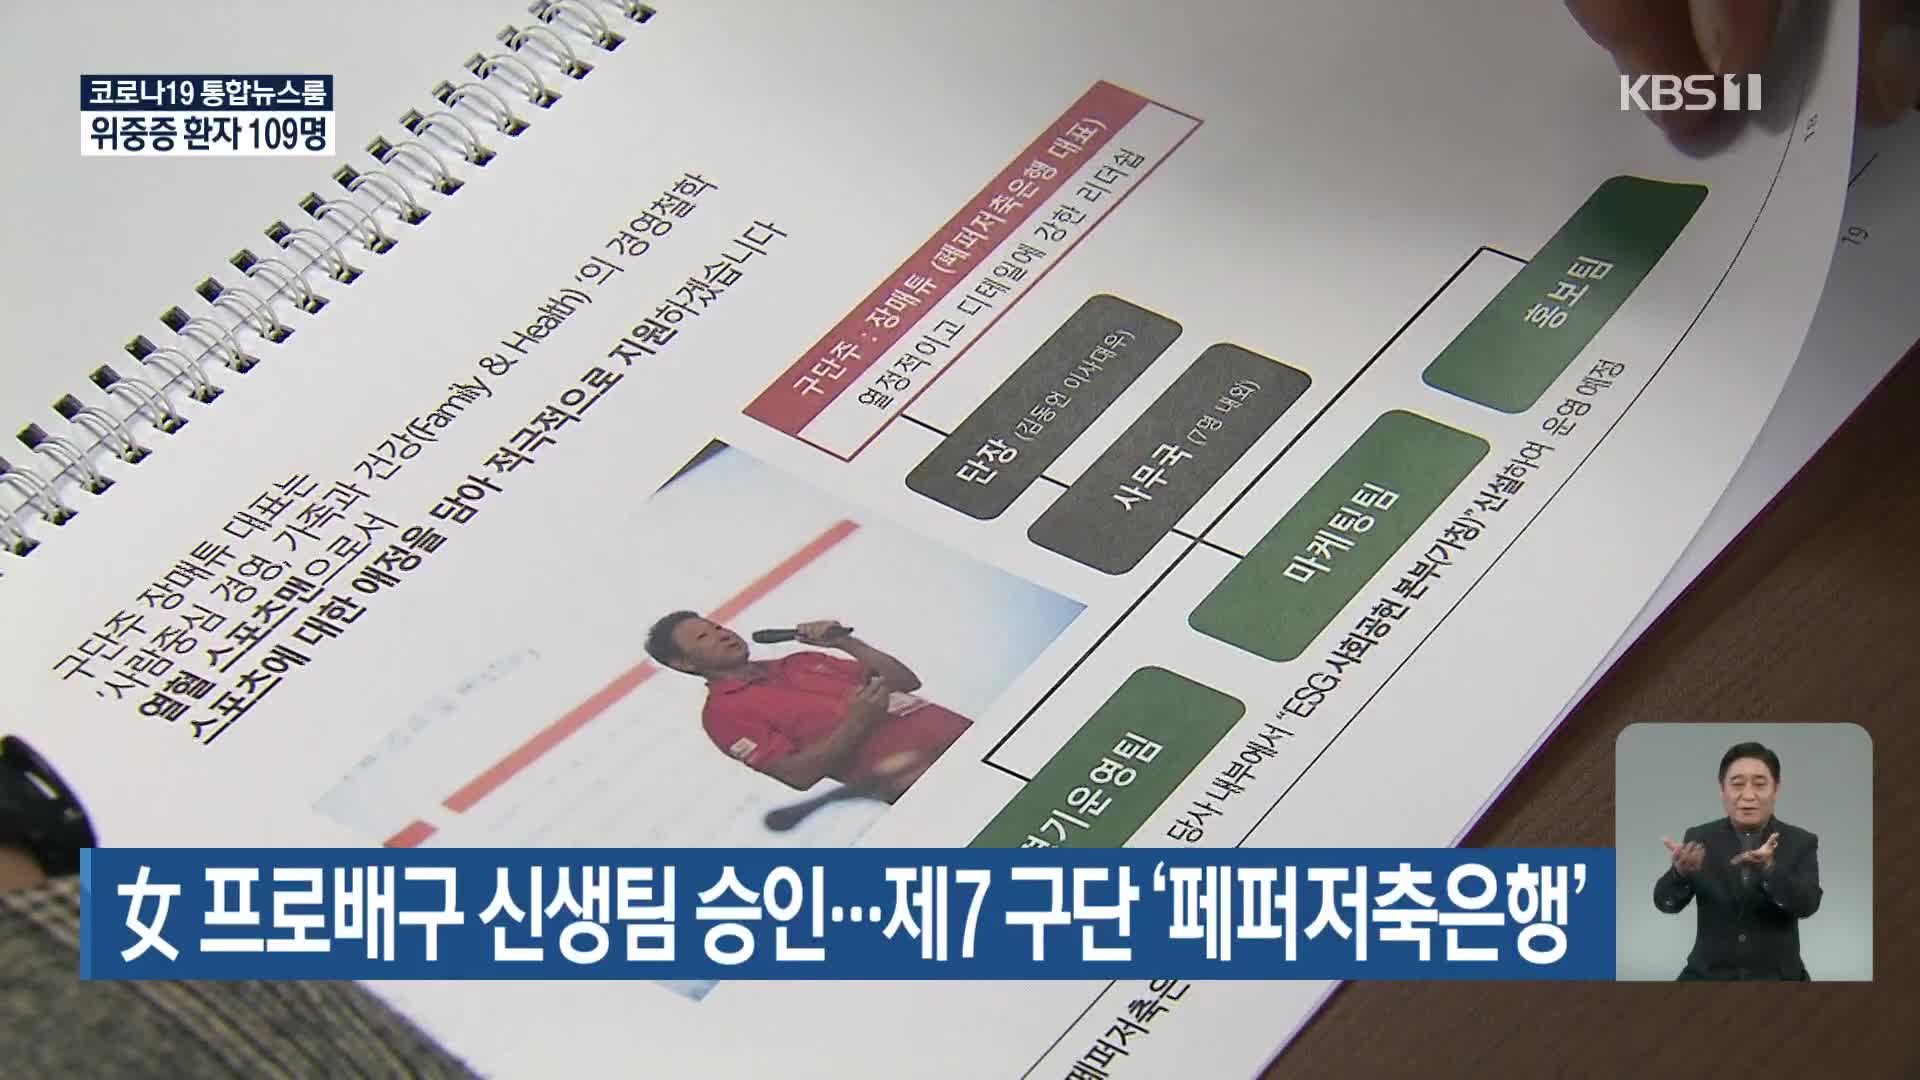 女 프로배구 신생팀 승인…제7 구단 ‘페퍼저축은행’